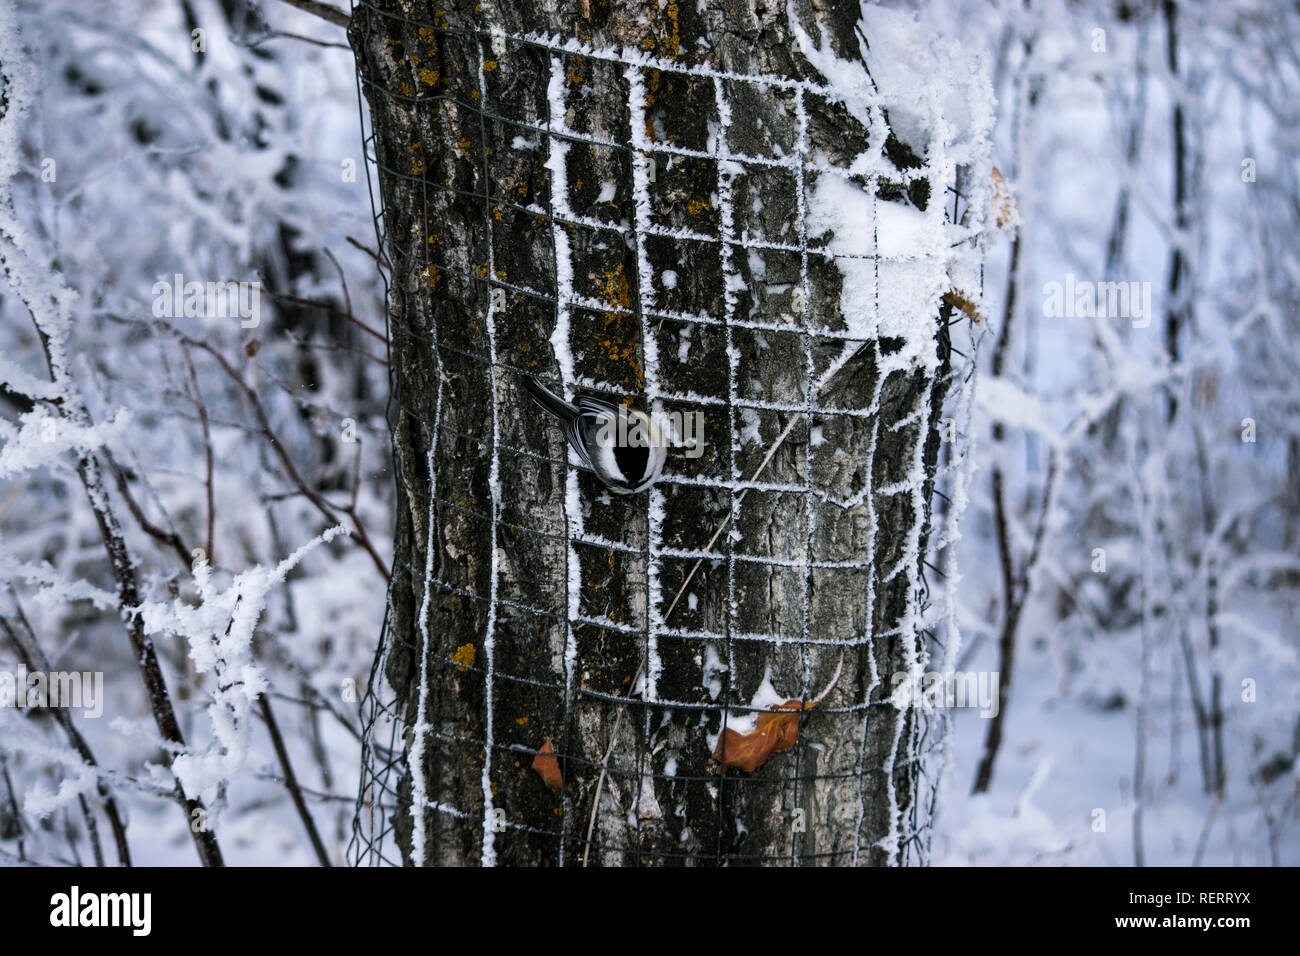 Extrem kalte Winter Morgen wandern. Frischer Schnee- und Eiskristalle auf der Bäume und Sträucher. Es war magisch. Sehen sie die amerikanische Meise? Stockfoto